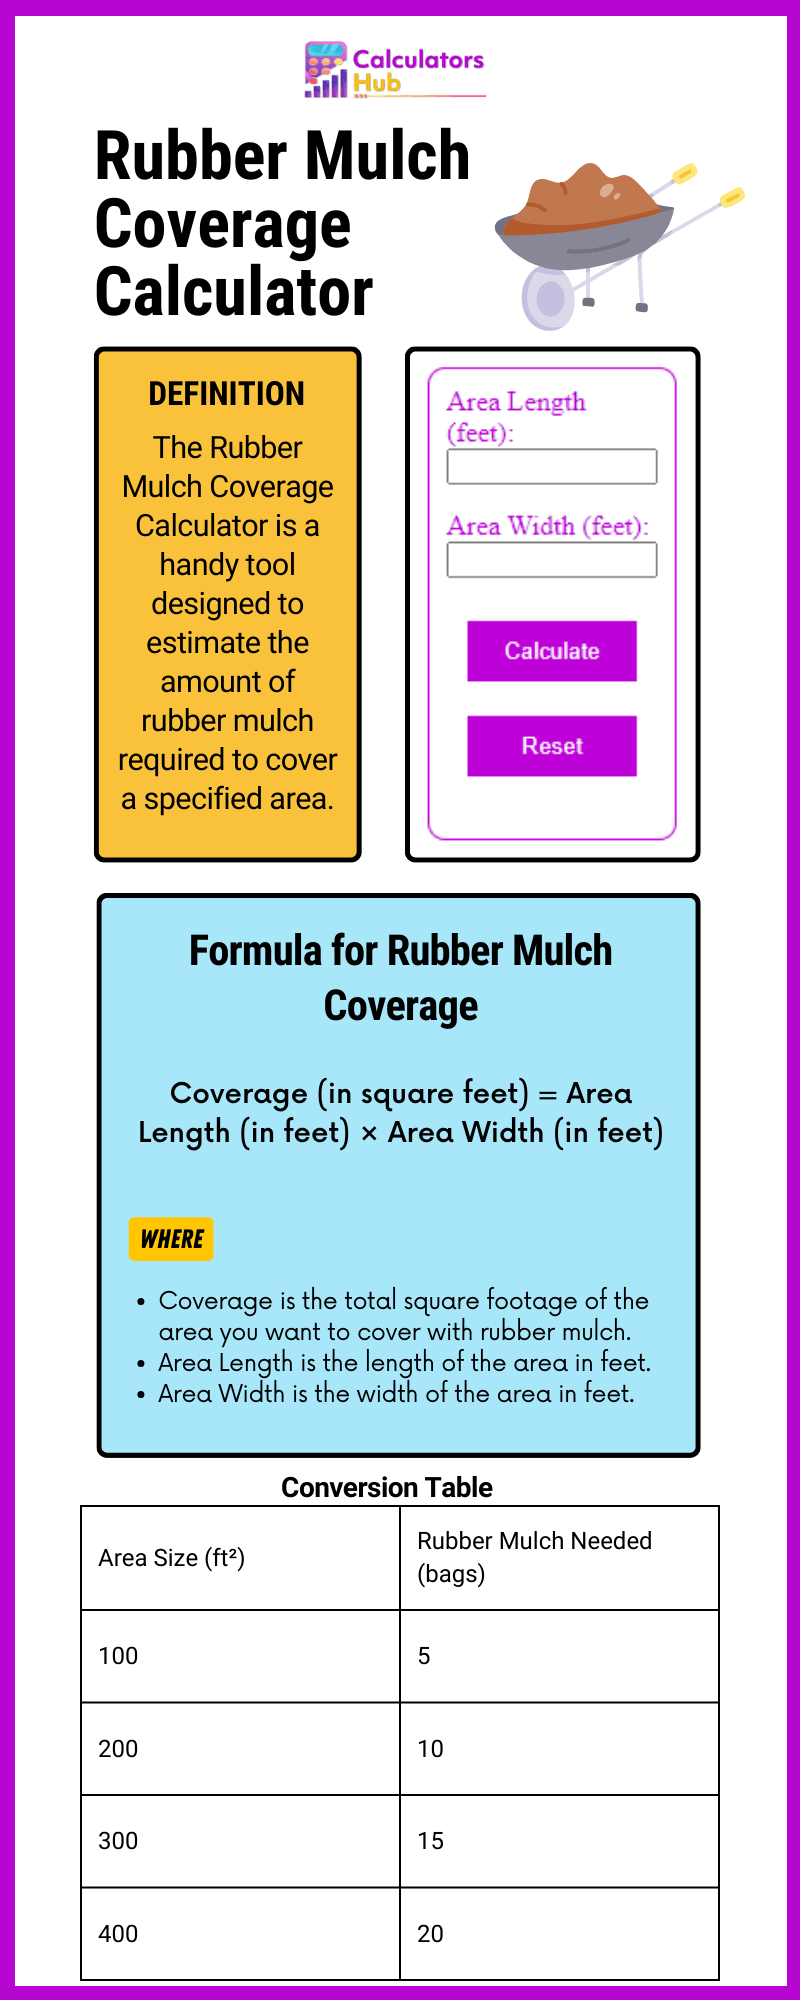 Rubber Mulch Coverage Calculator